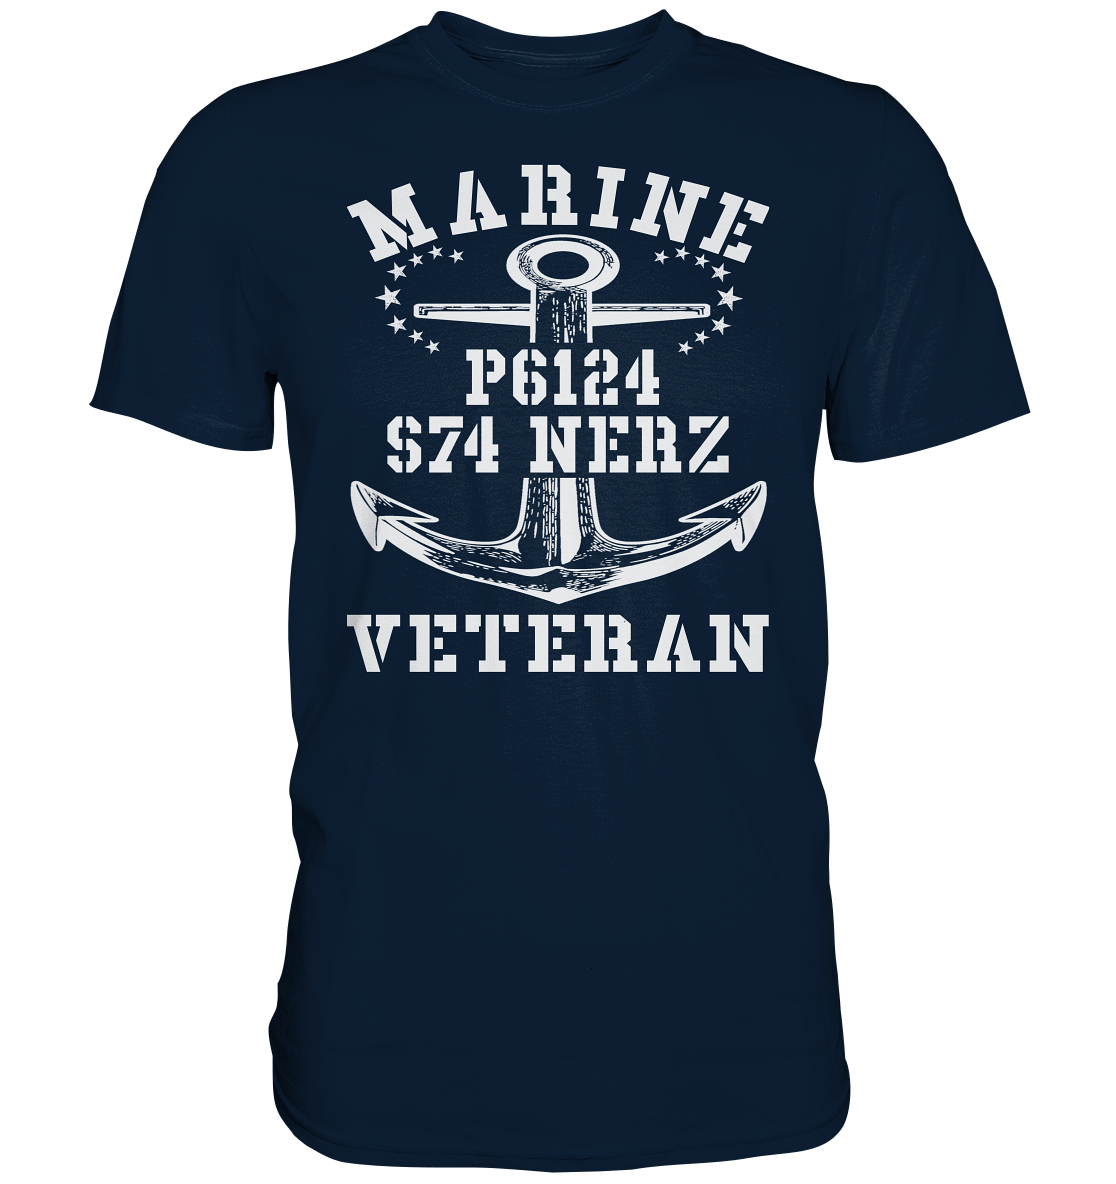 FK-Schnellboot P6124 NERZ Marine Veteran - Premium Shirt